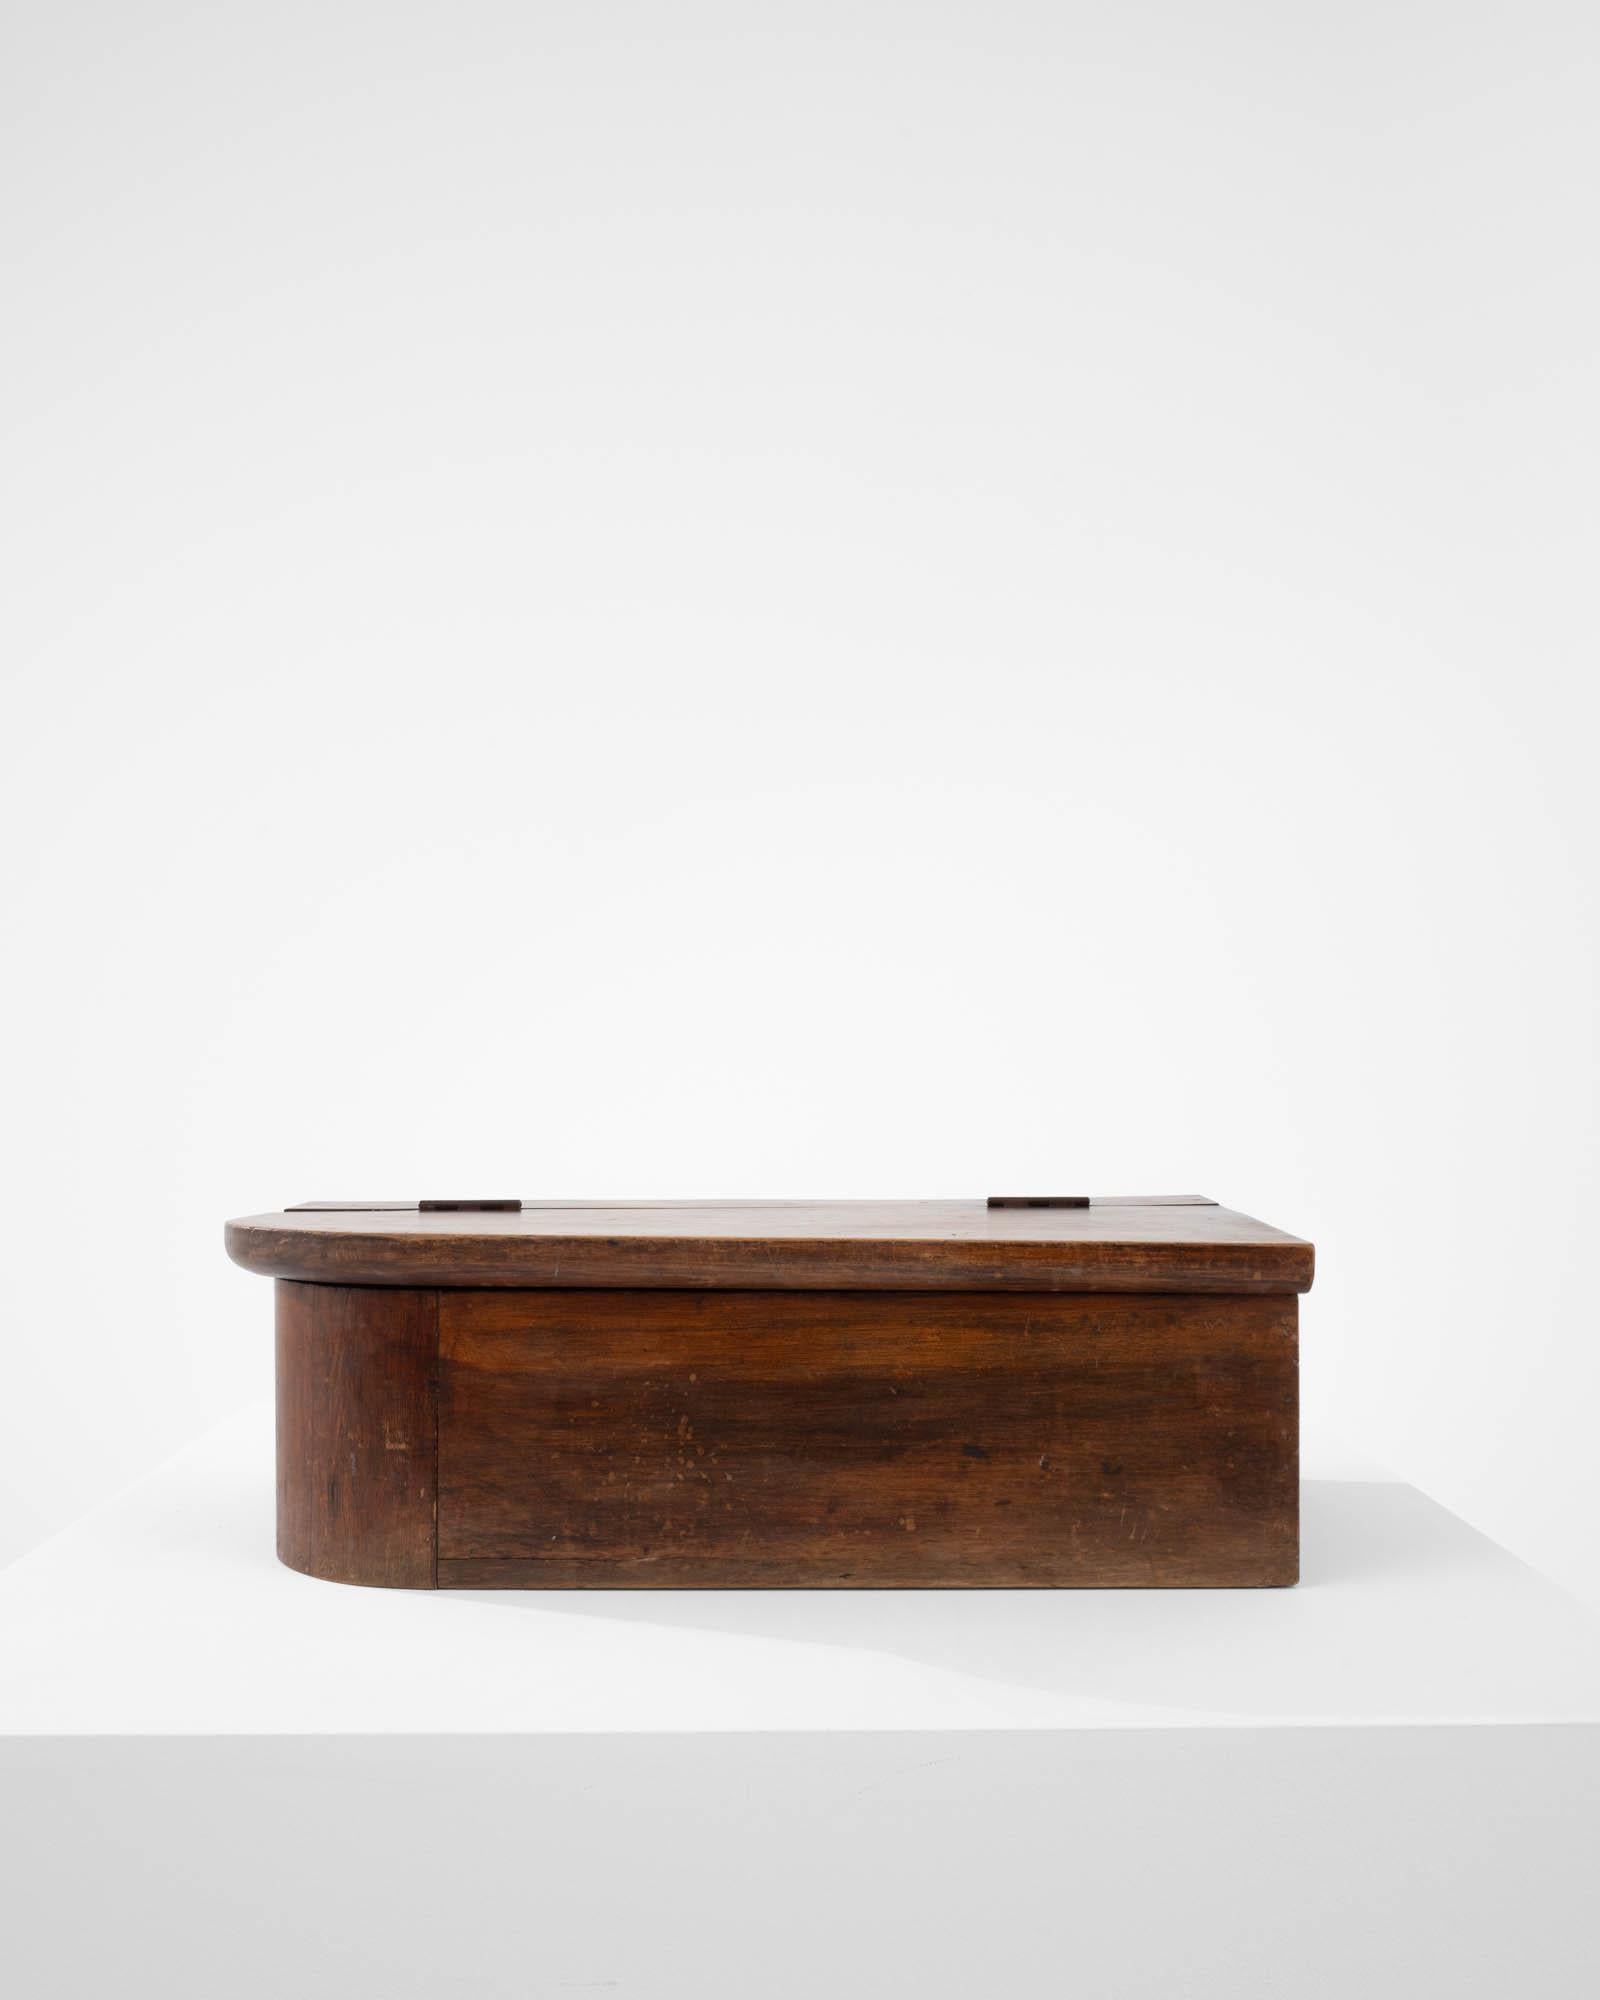 Fabriquée à la main en France au XIXe siècle, cette charmante boîte en bois présente un design unique avec un coin arrondi, ce qui lui confère une allure asymétrique captivante. L'ajout d'un élégant couvercle rabattable garantit un accès sans effort